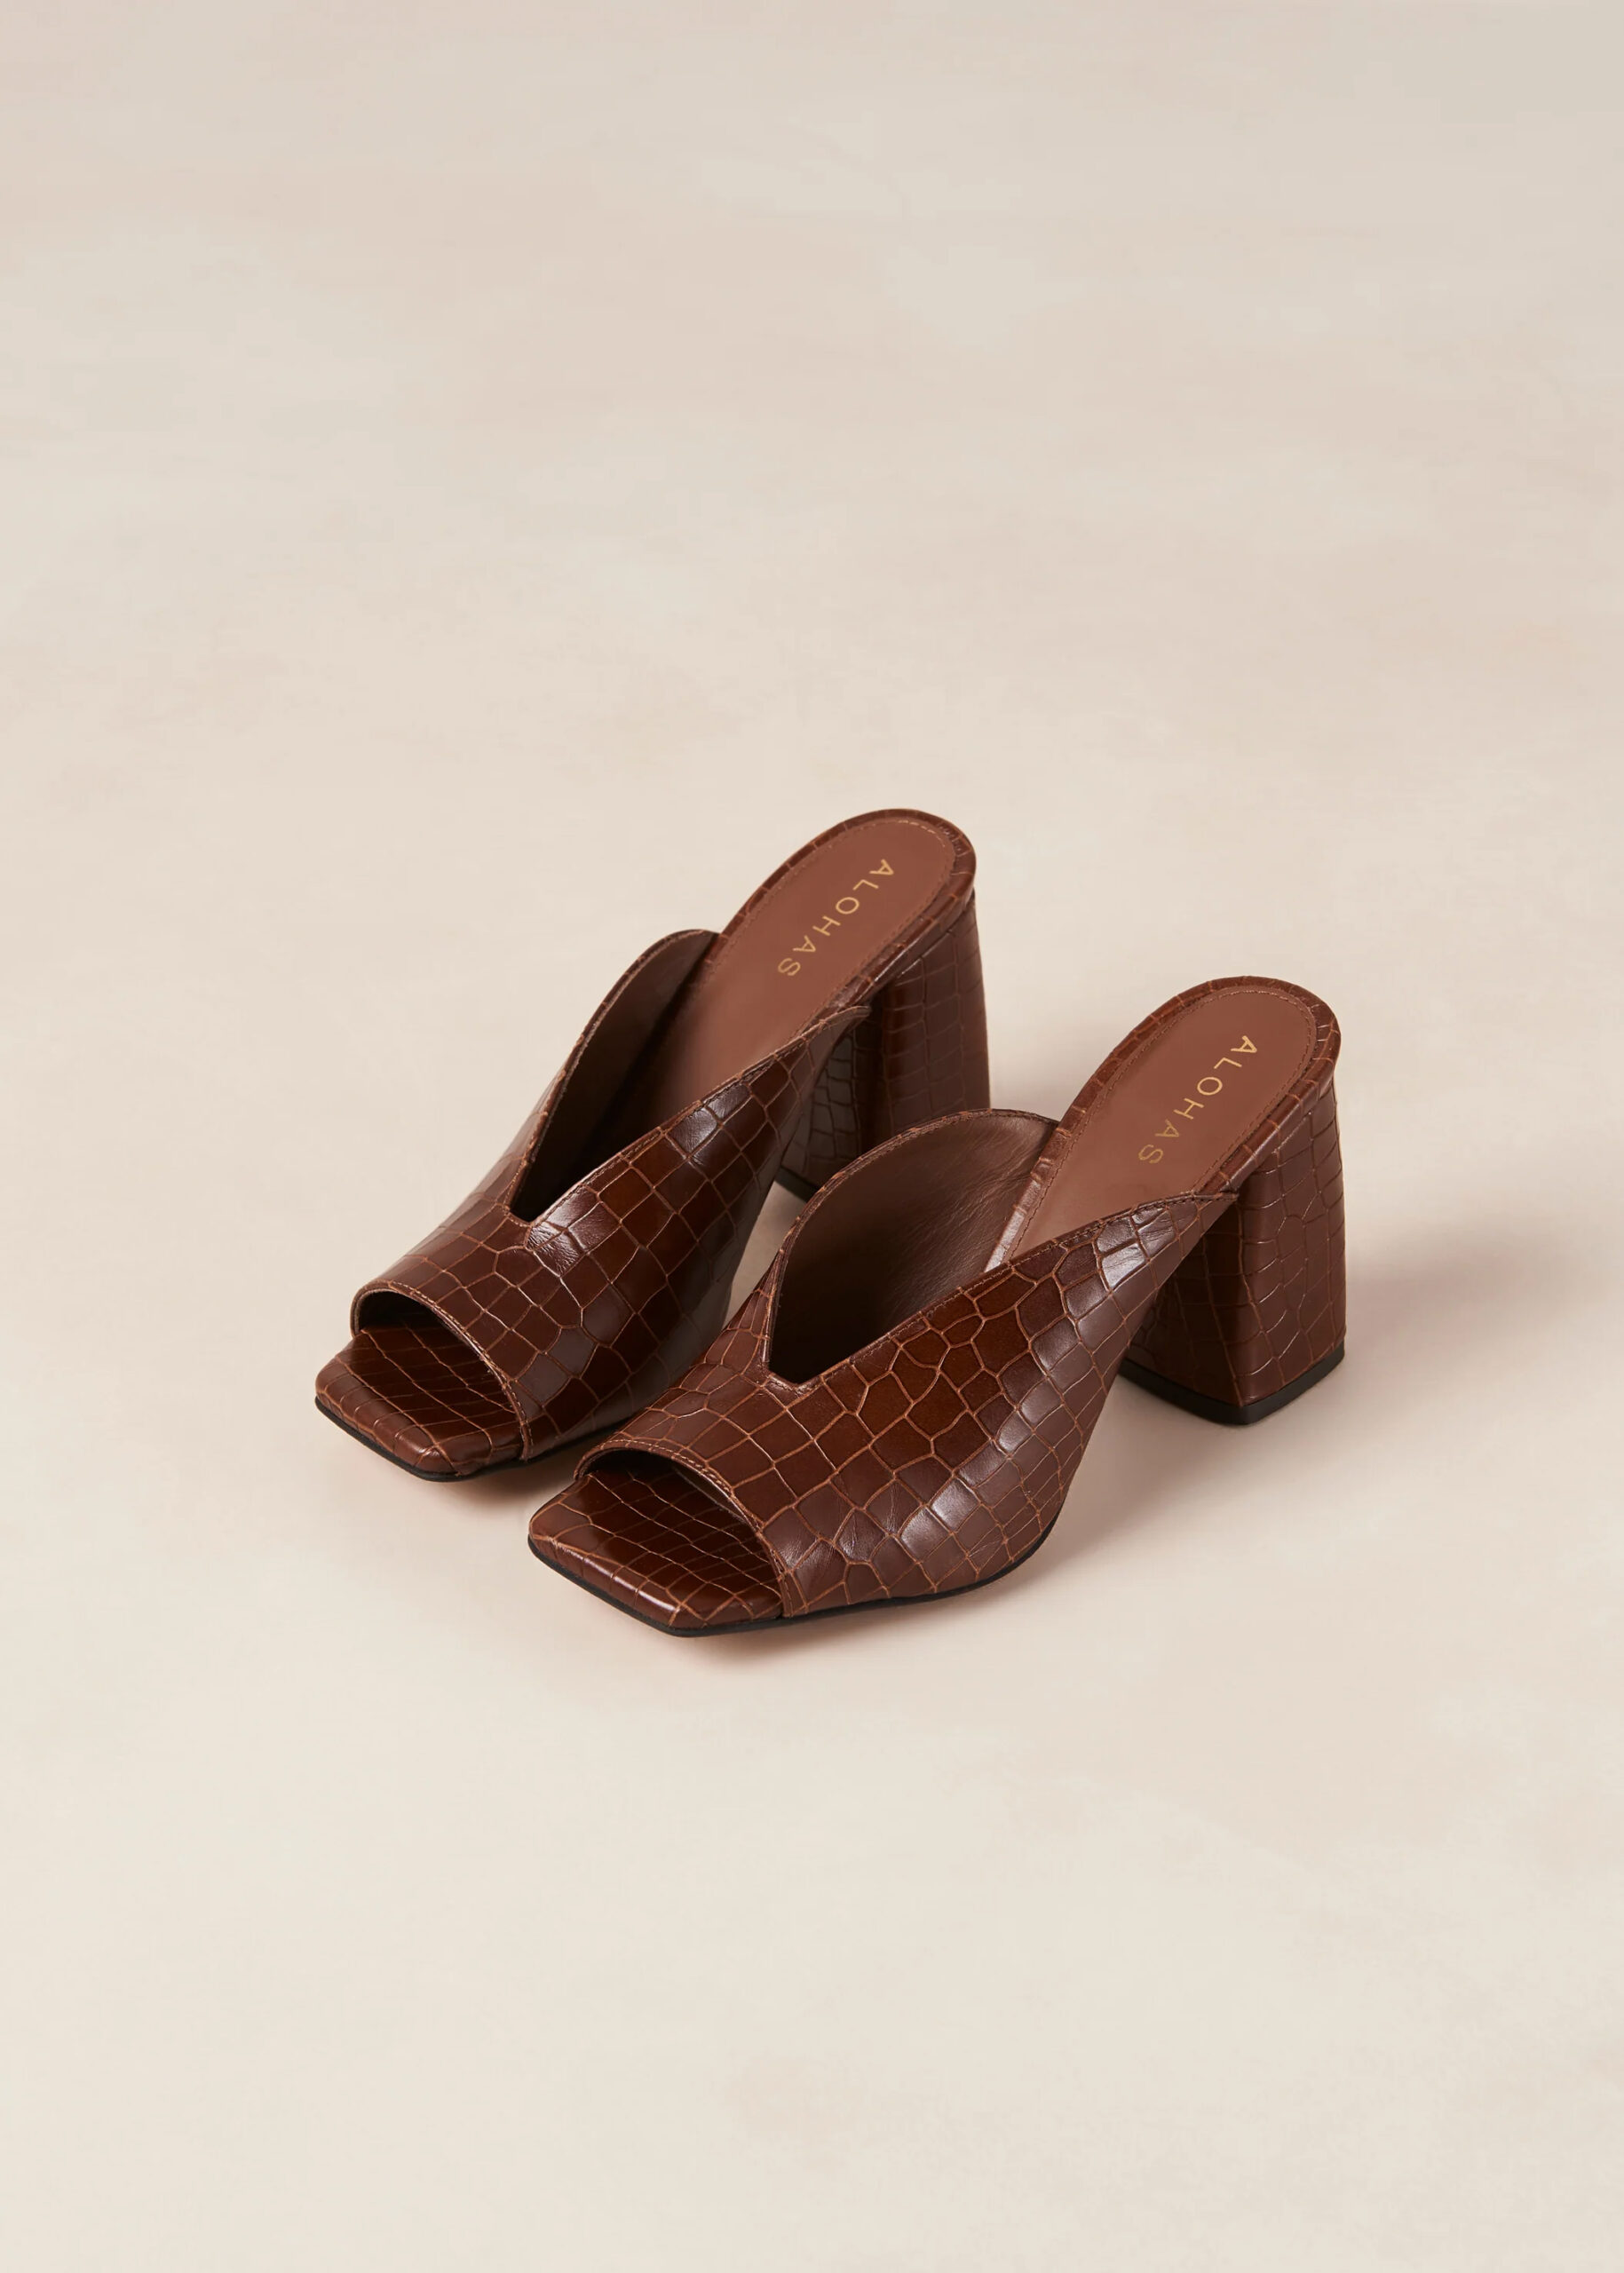 Brown crocodile-textured brown mule heels. 